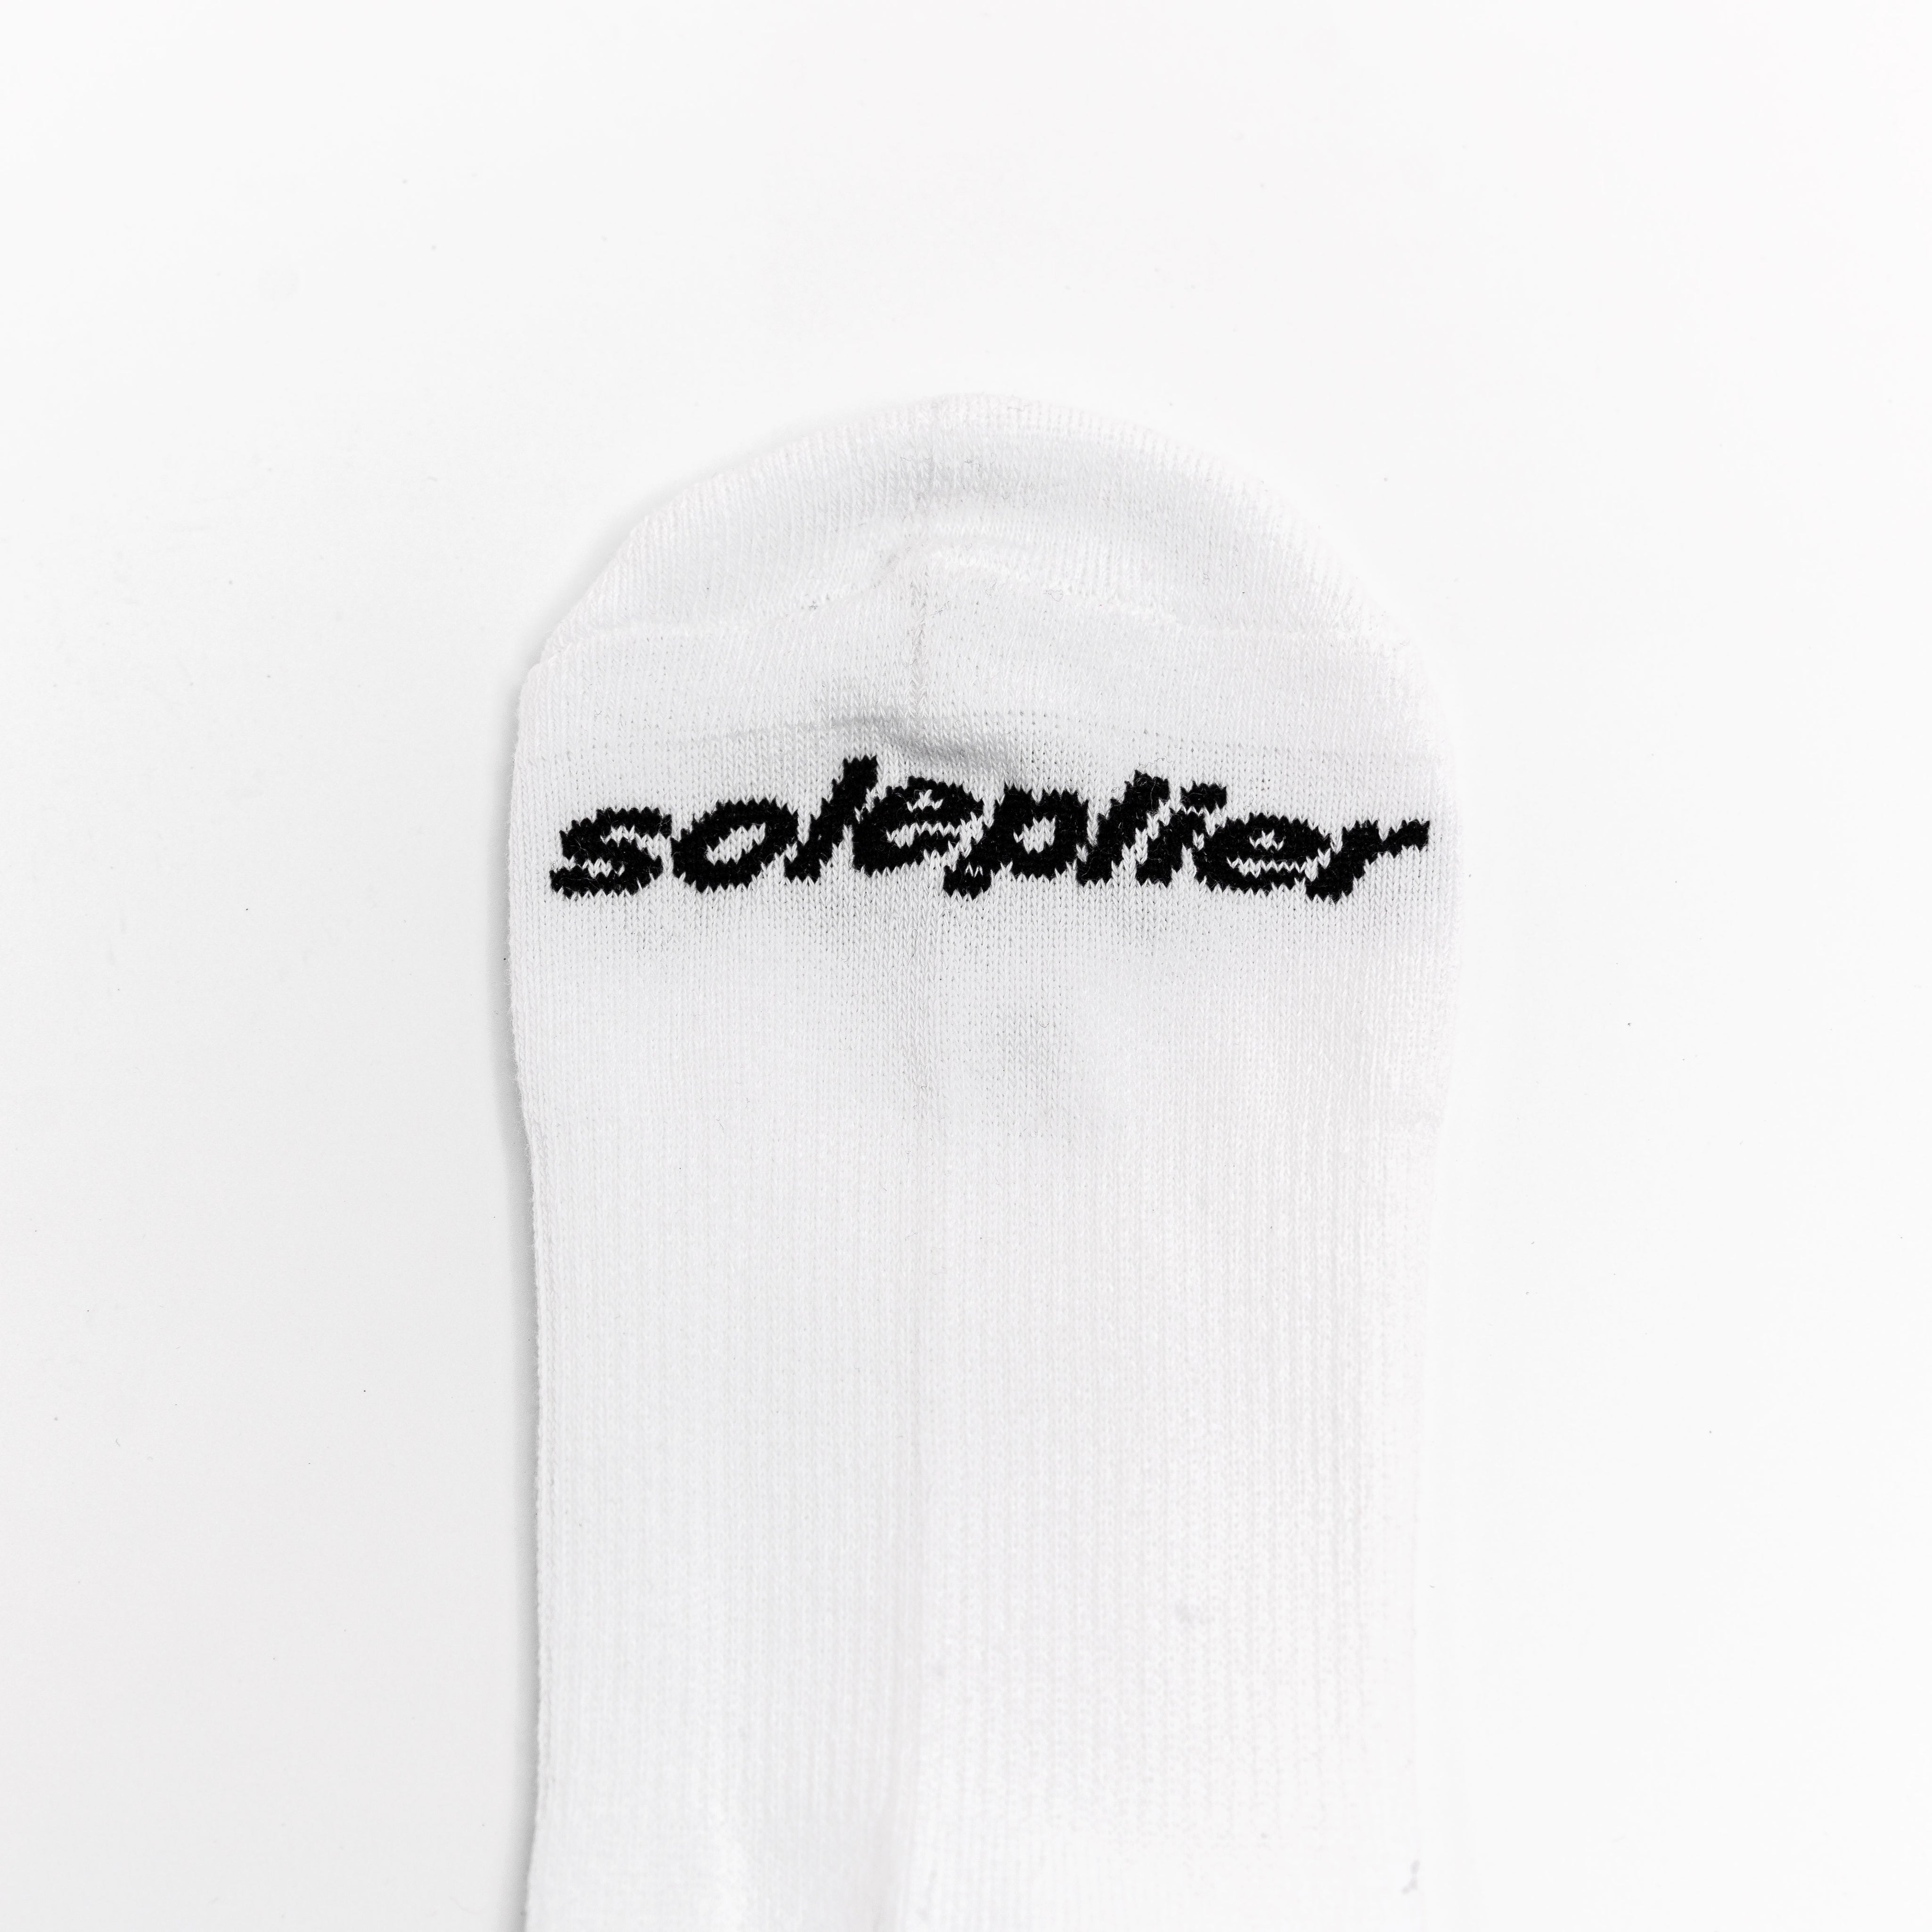 SOLEPLIER Star Socks 2 Pack White